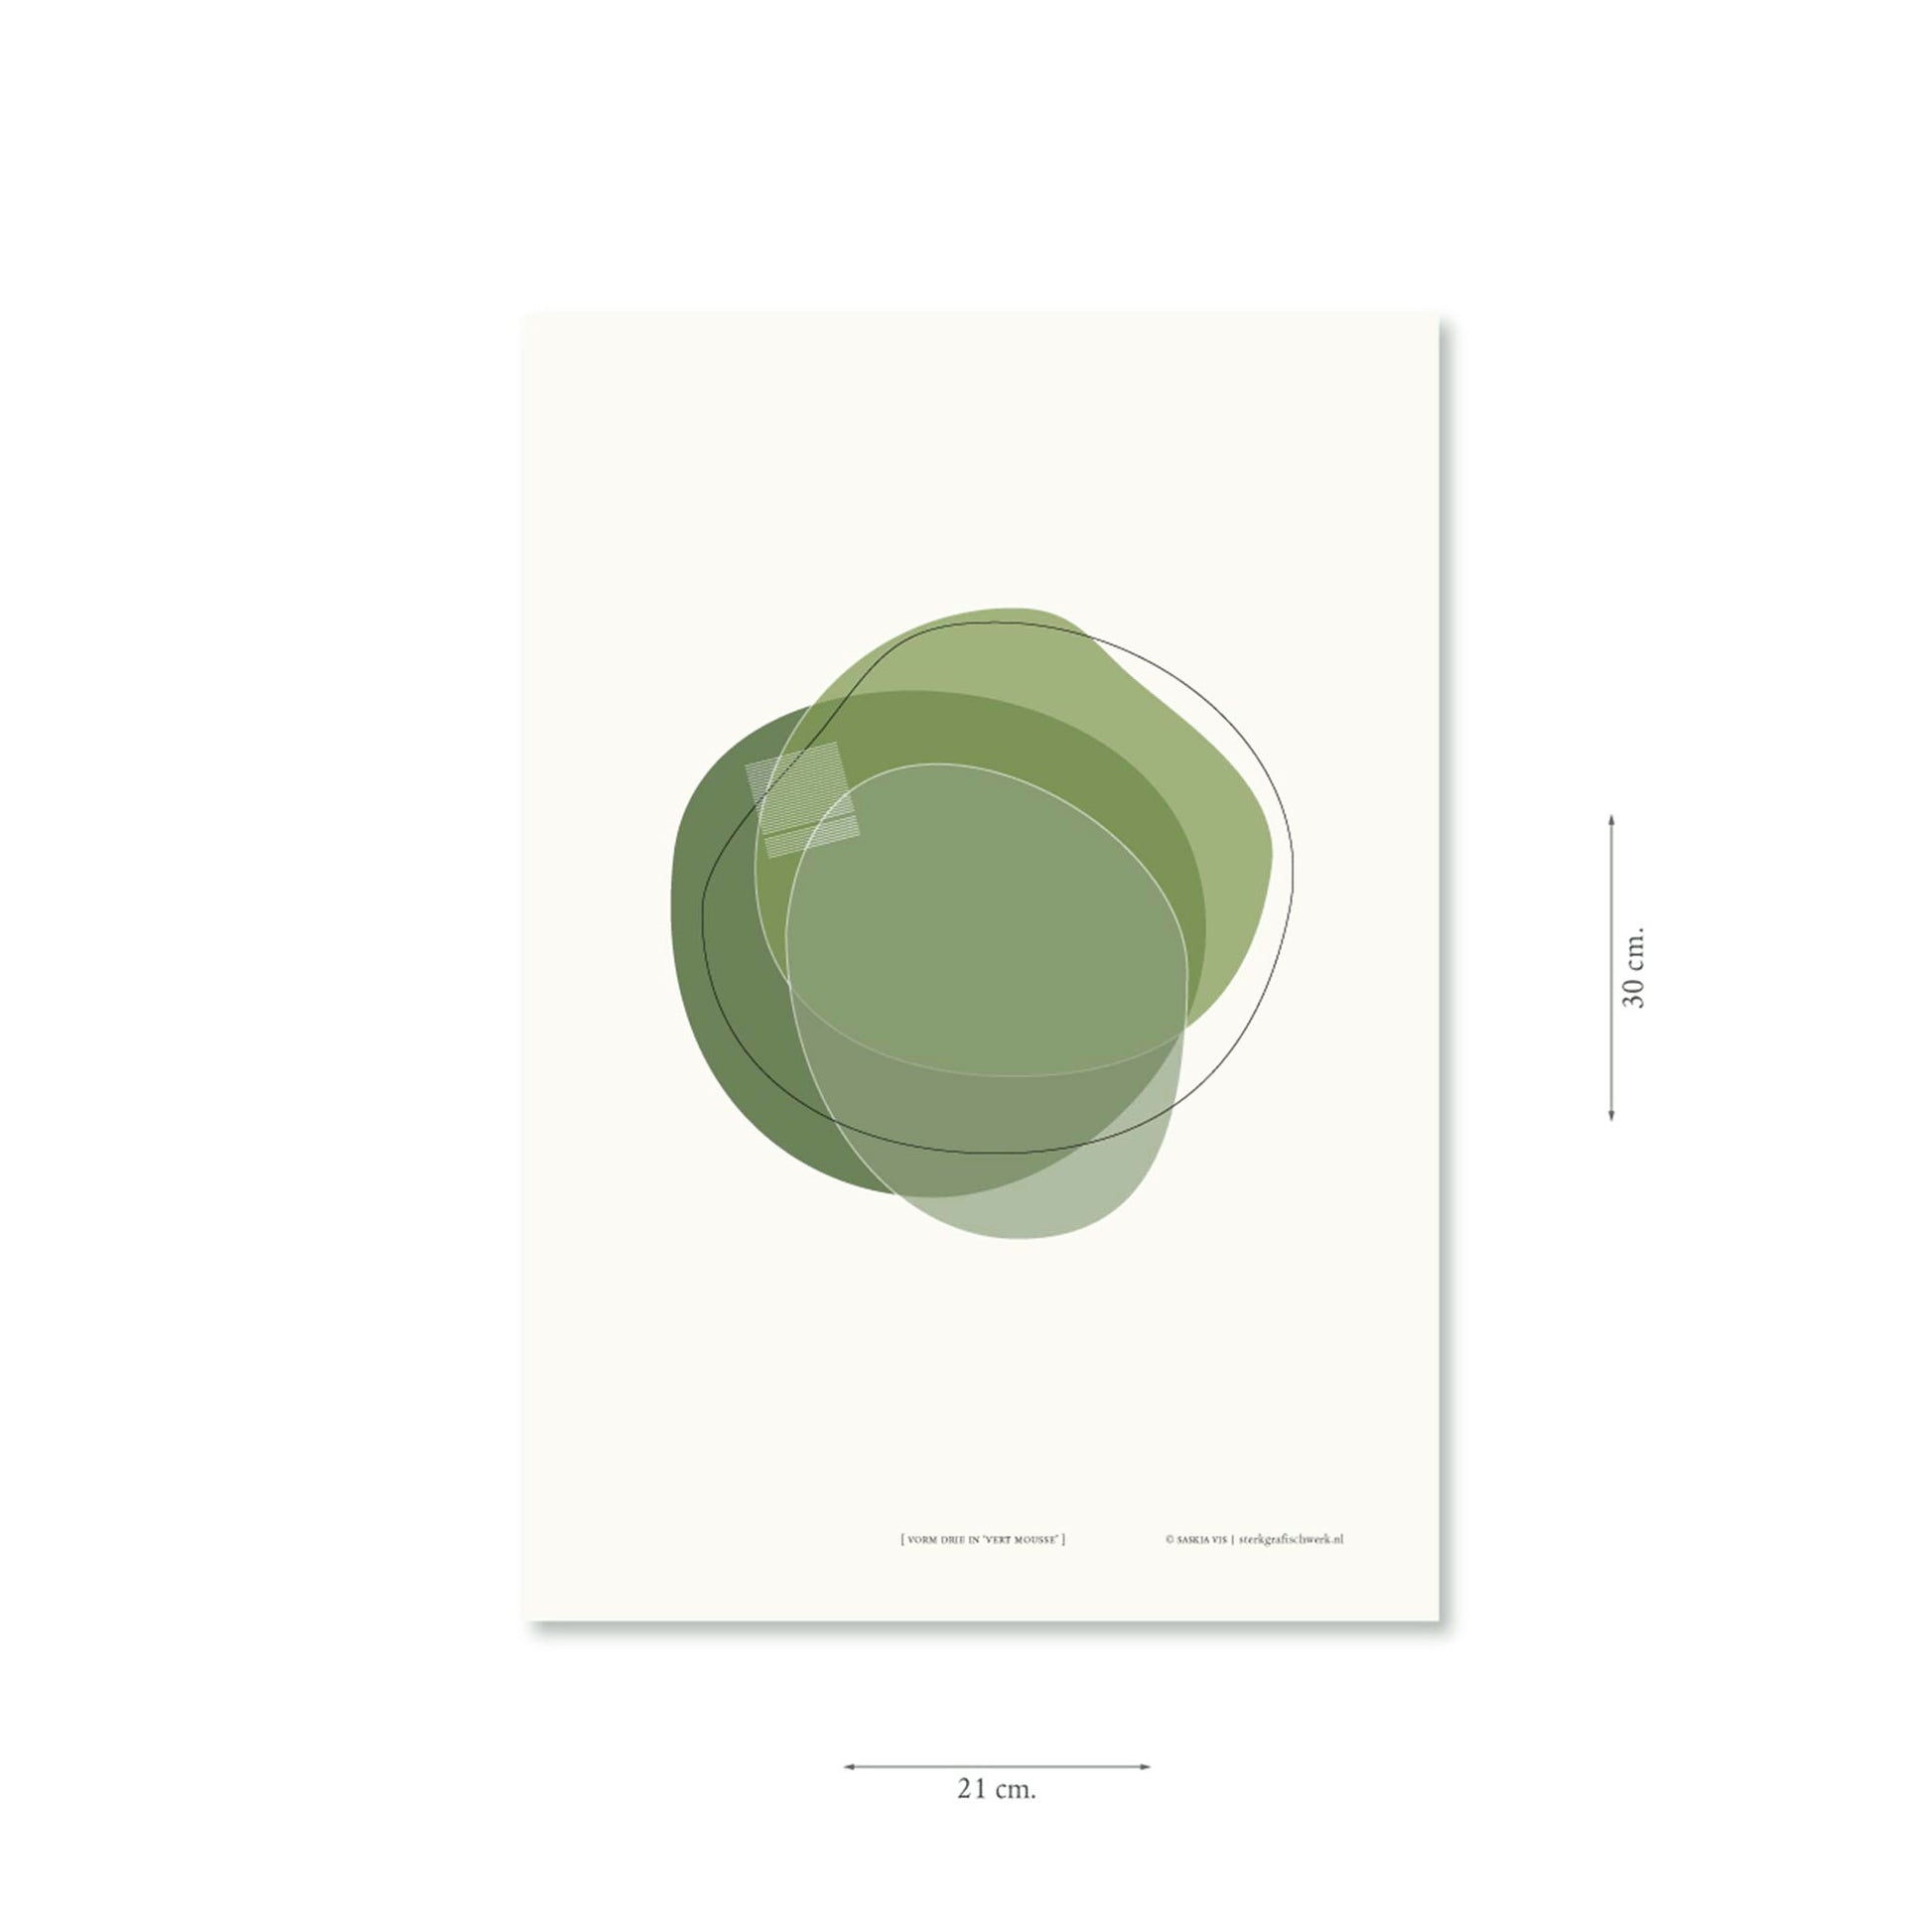 Productafbeelding, poster "vorm drie in vert mousse", met aanduiding van het formaat erop weergegeven 21 x 30 cm